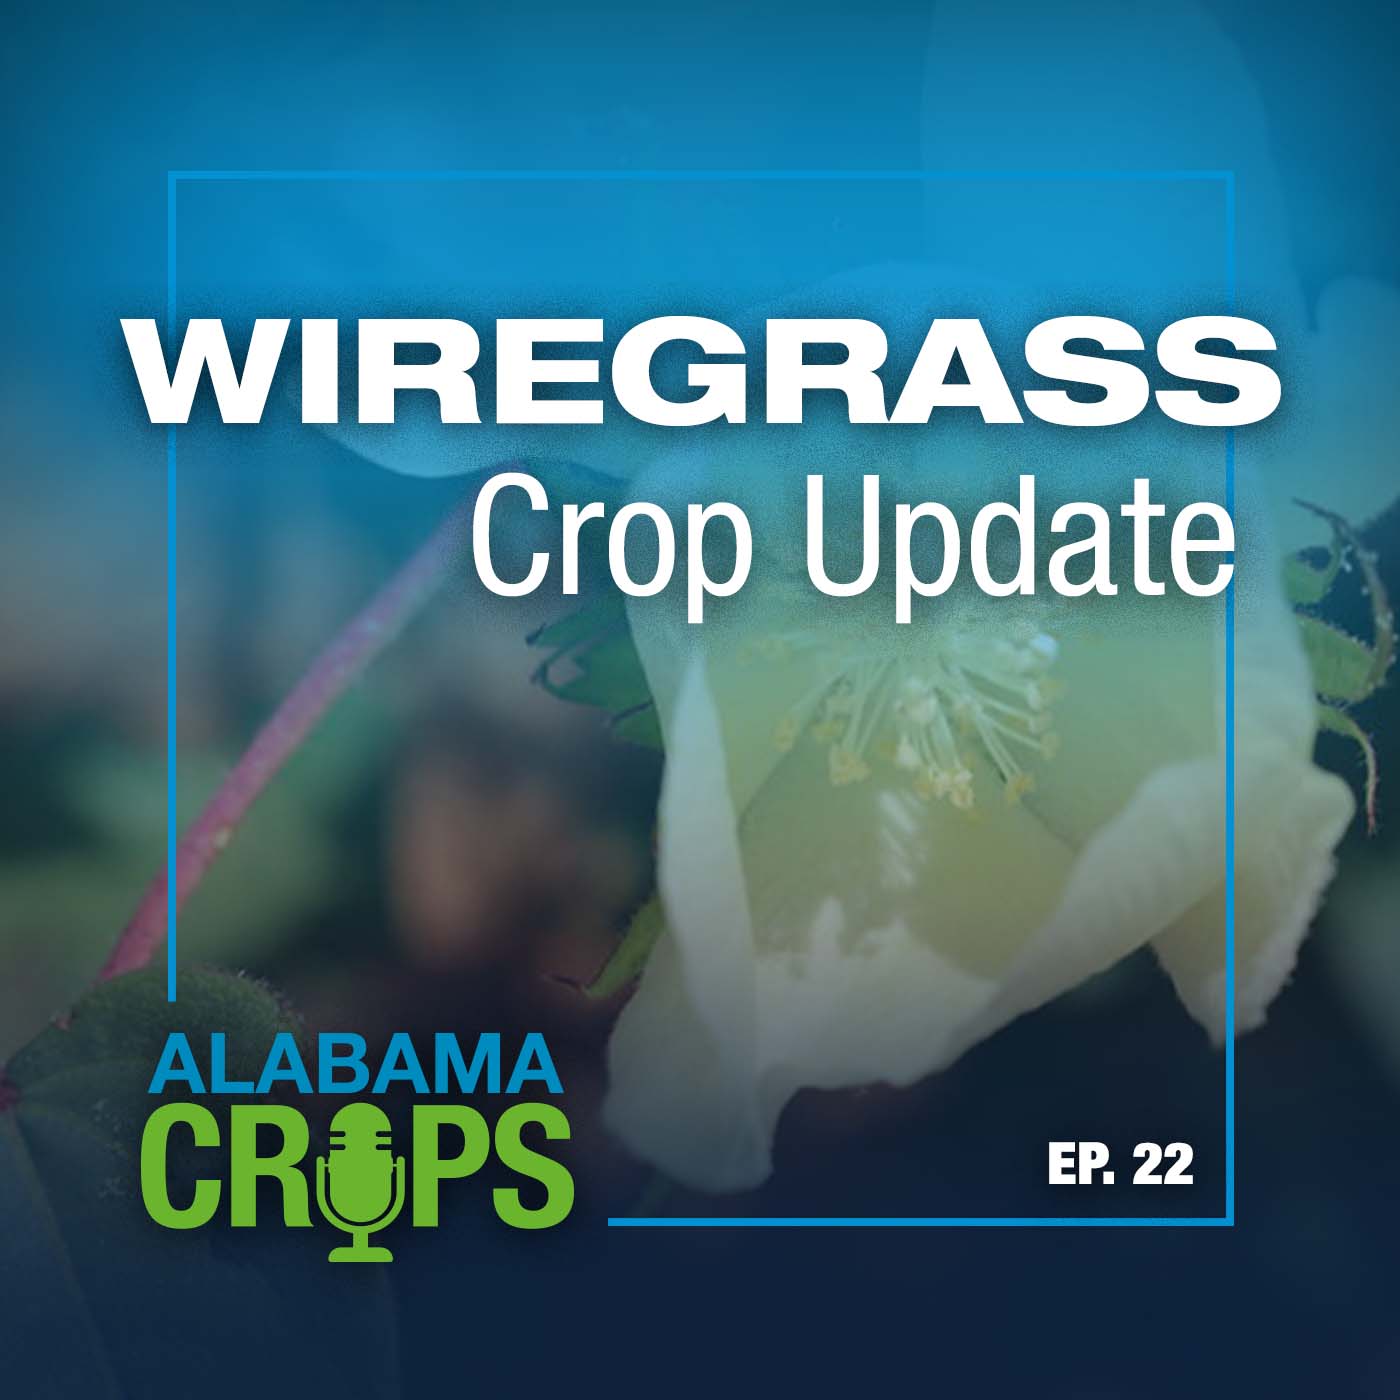 Episode 22 – Wiregrass Crop Update